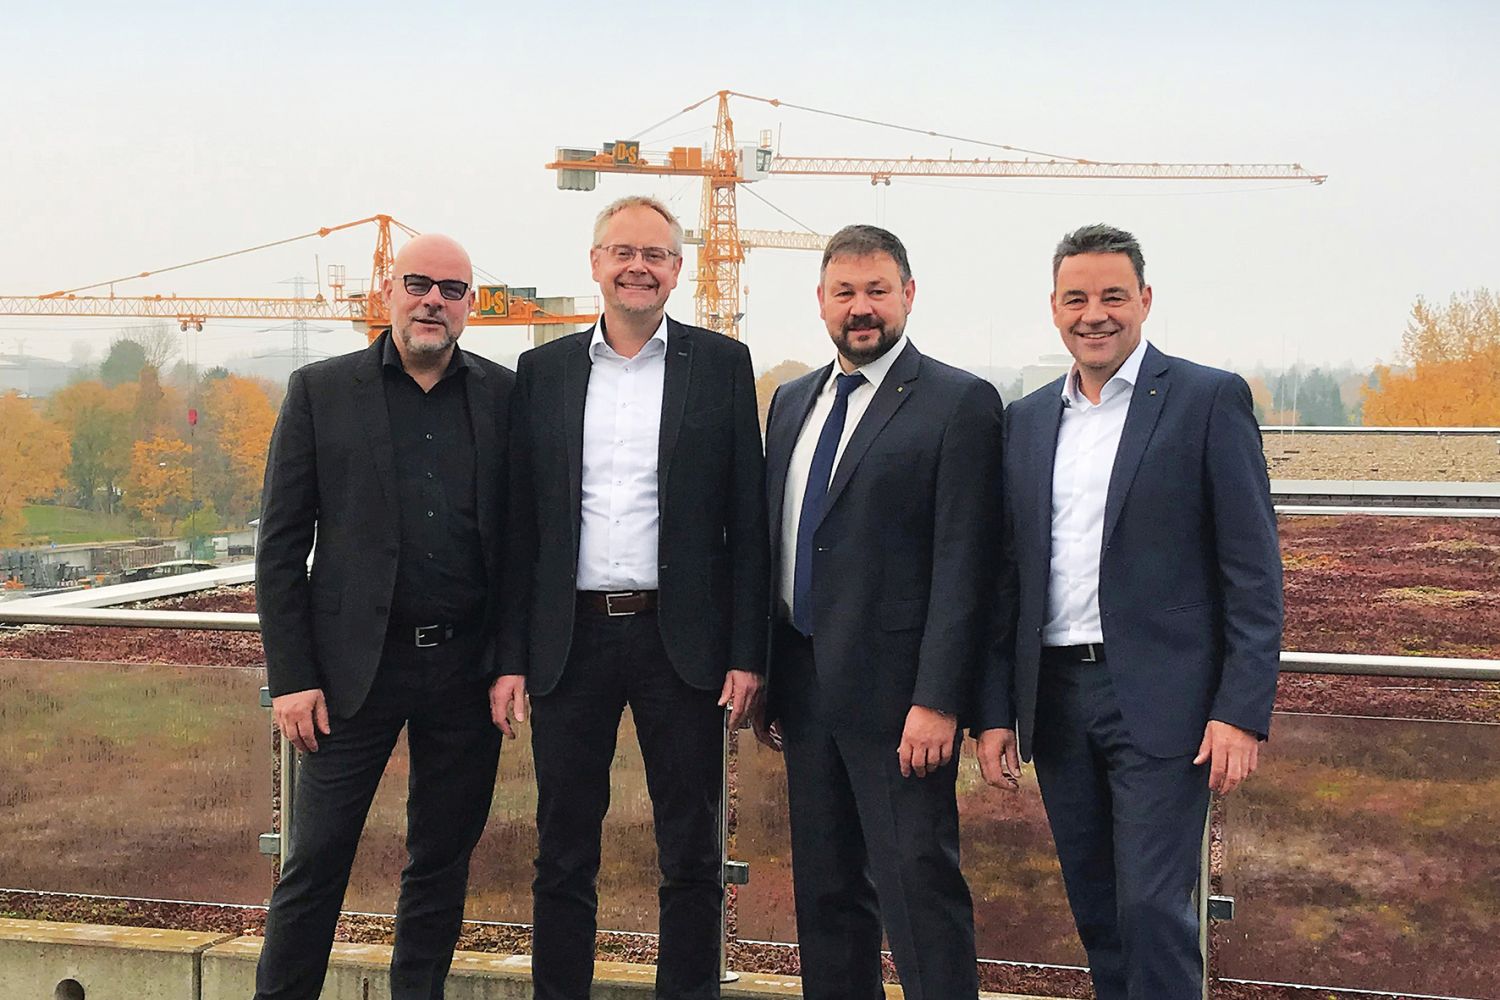 Geschäftsführung der D&S Rohrsanierung: Markus Brechwald, Richard Mohr, Jürgen König und Tobias Volckmann